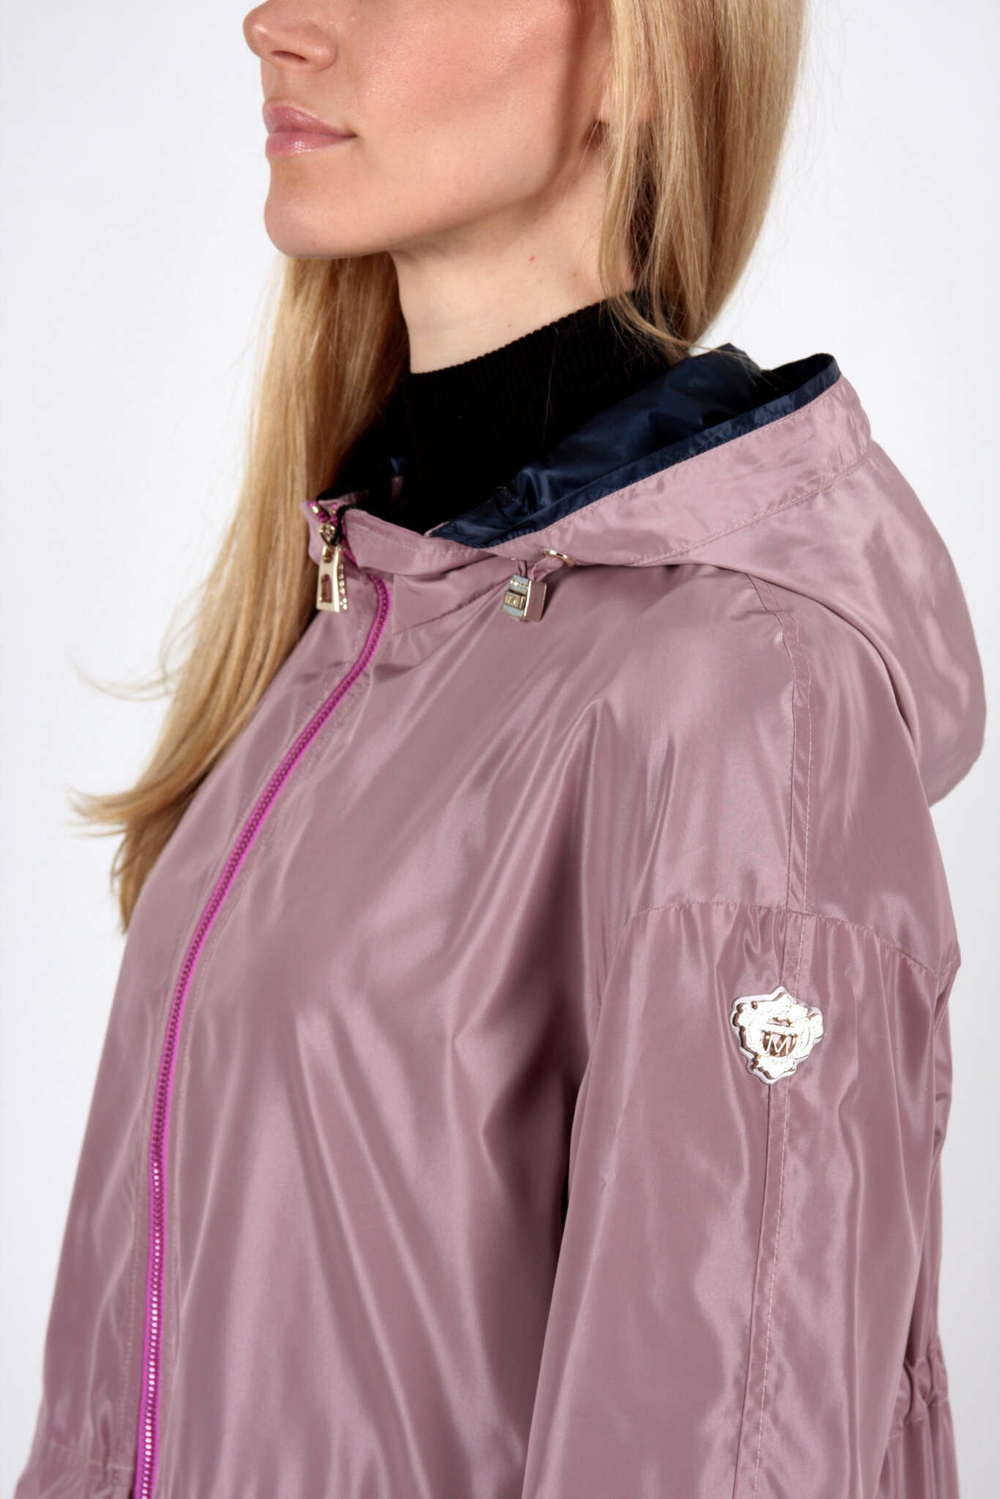 Куртка жен DIEGO M 602 пудровая, капюшон